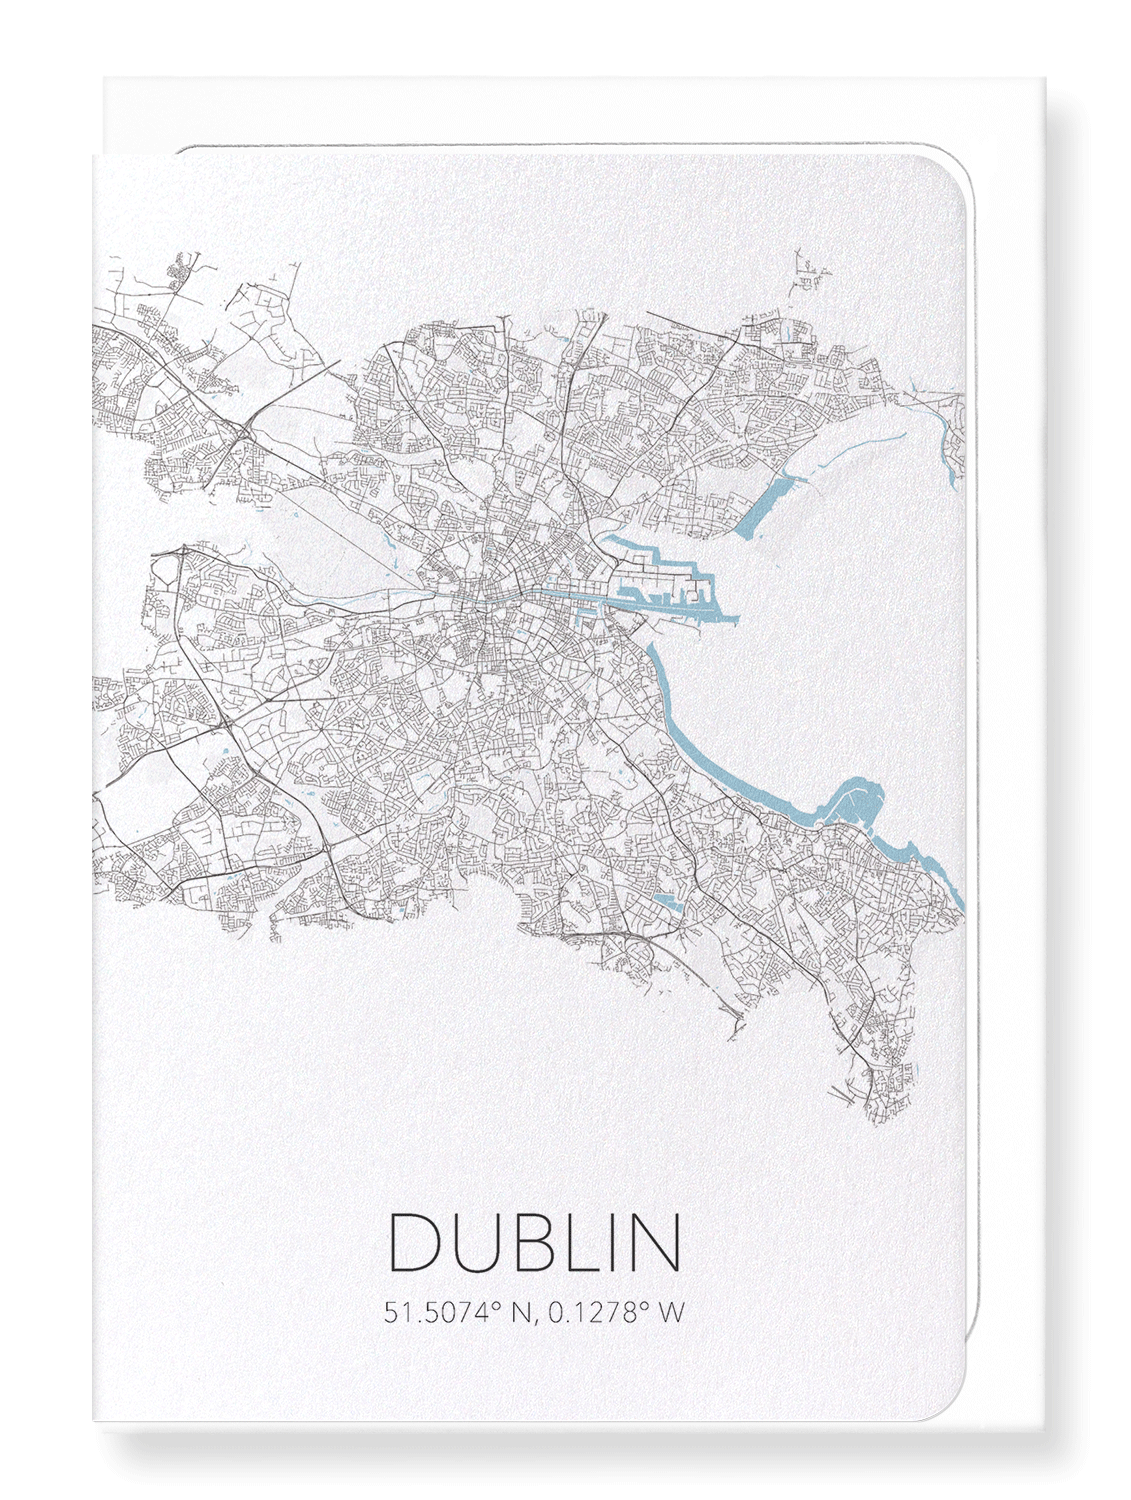 DUBLIN CUTOUT: Map Cutout Greeting Card